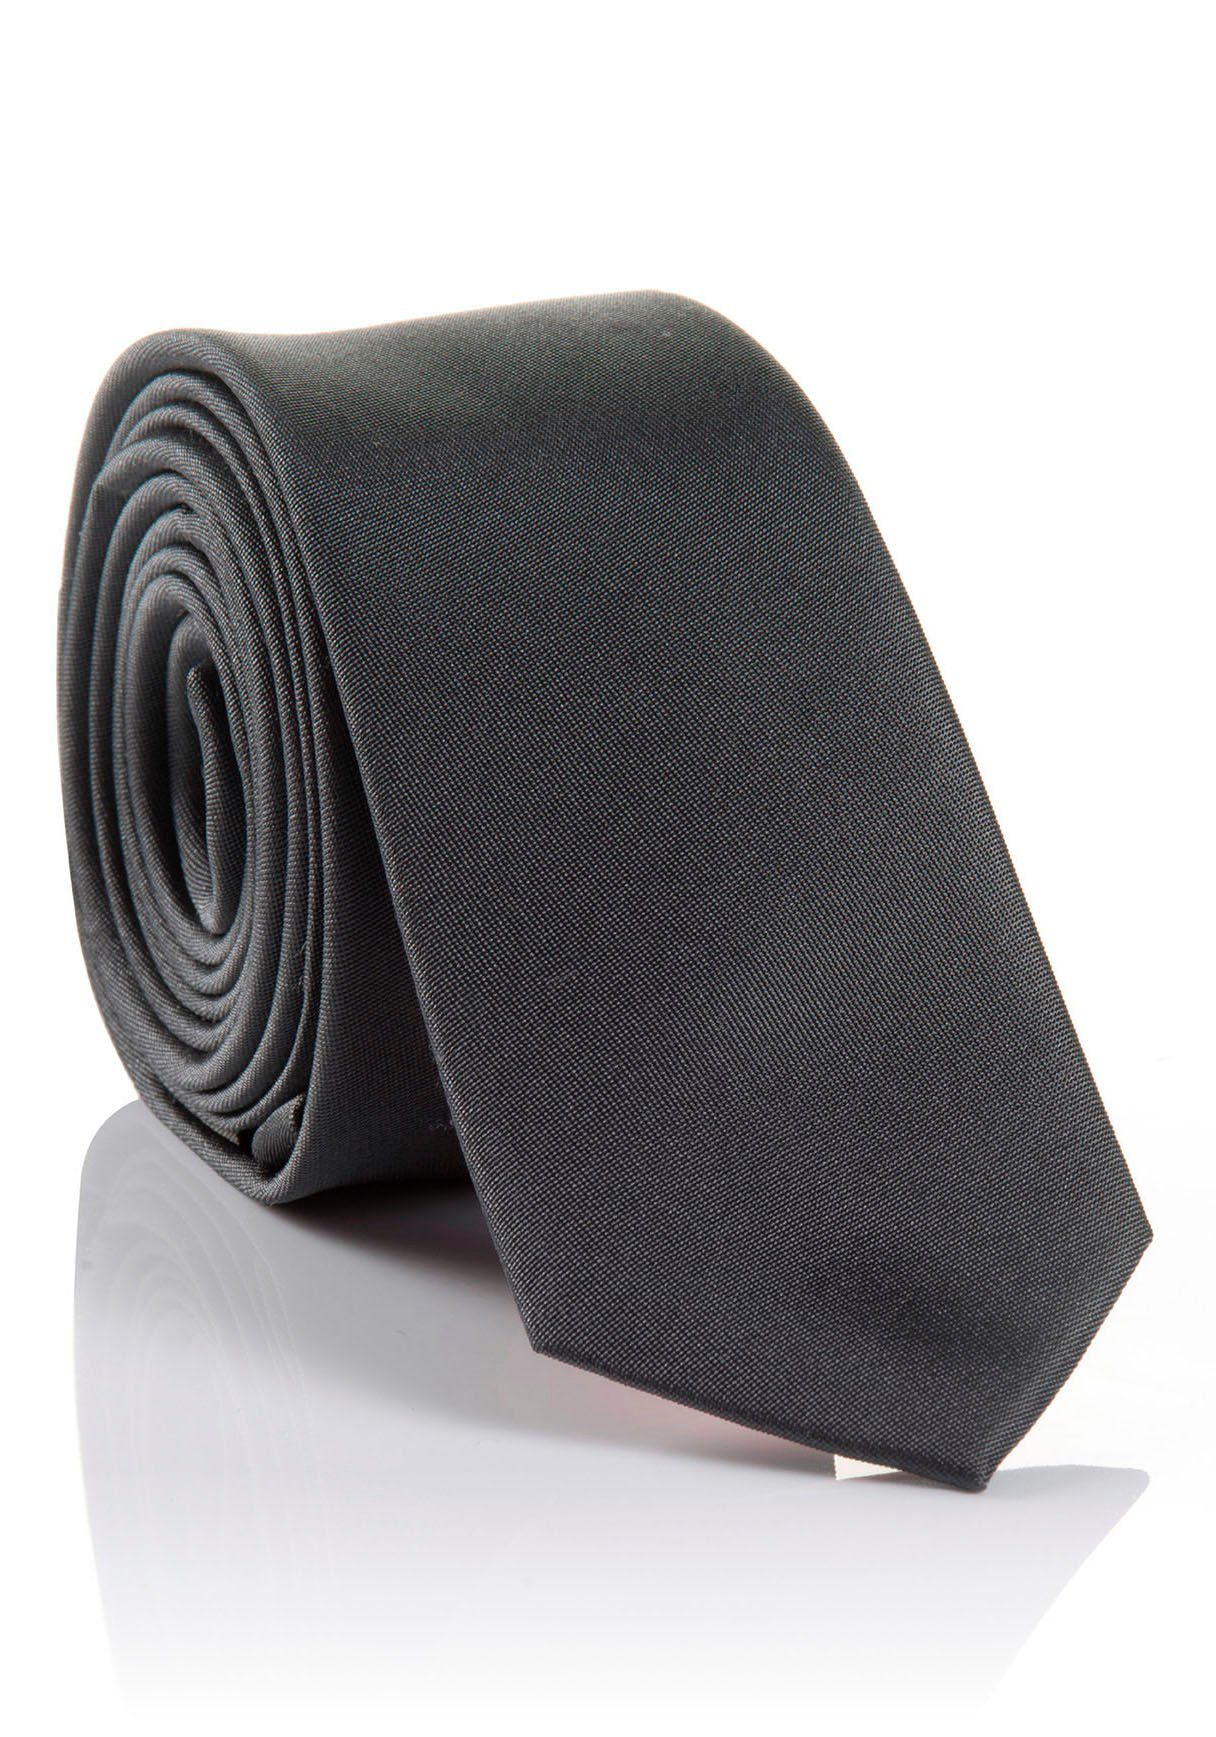 MONTI Krawatte verarbeitete Seidenkrawatte mit hohem Tragekomfort grey Hochwertig LORENZO